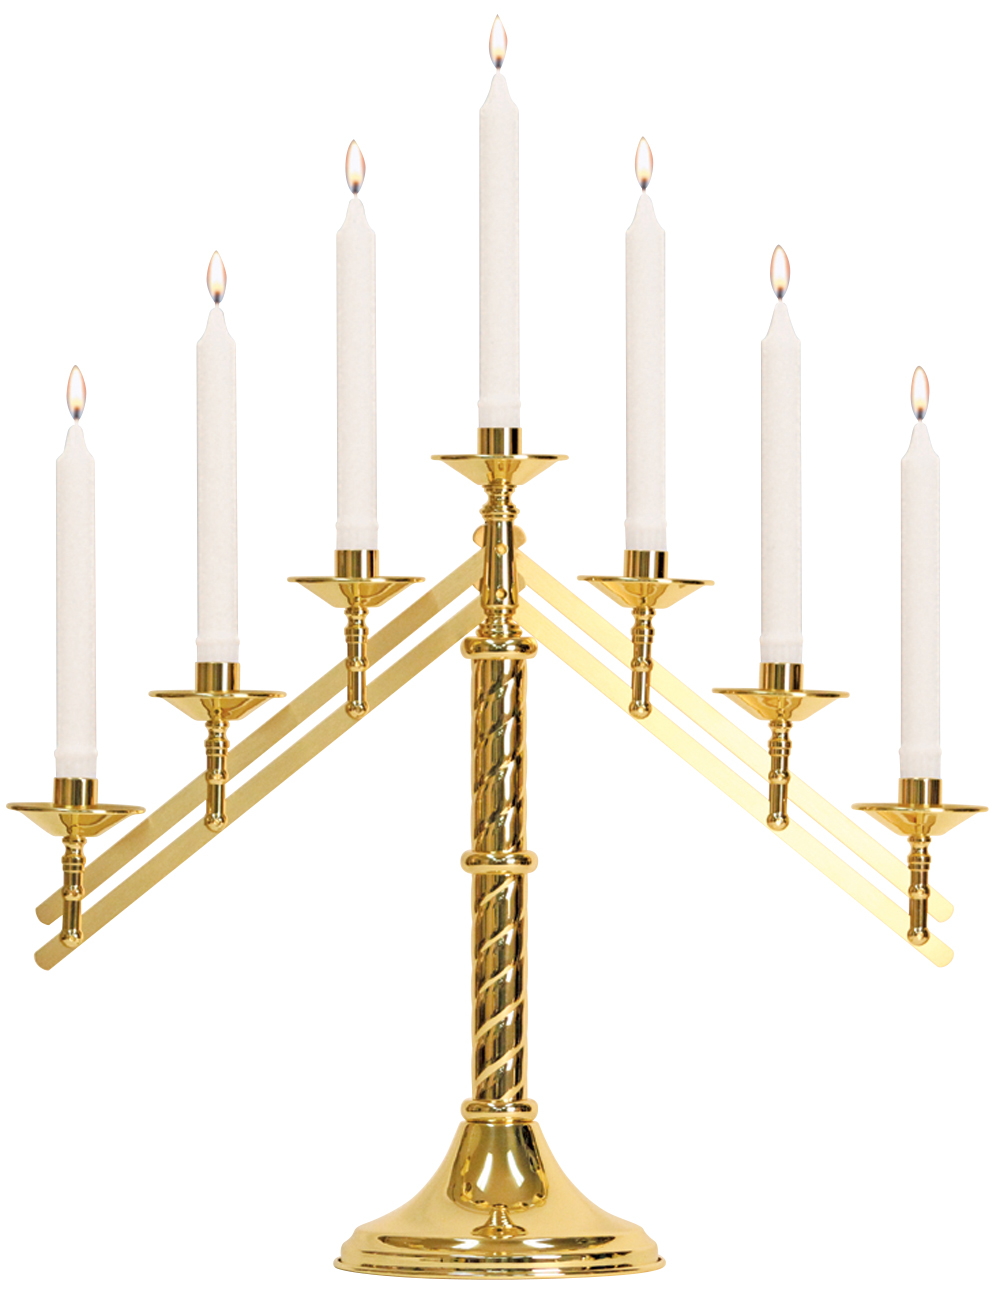 Altar Candelabra 7, 5 or 3 Light Helix Design 7/8 in Socket